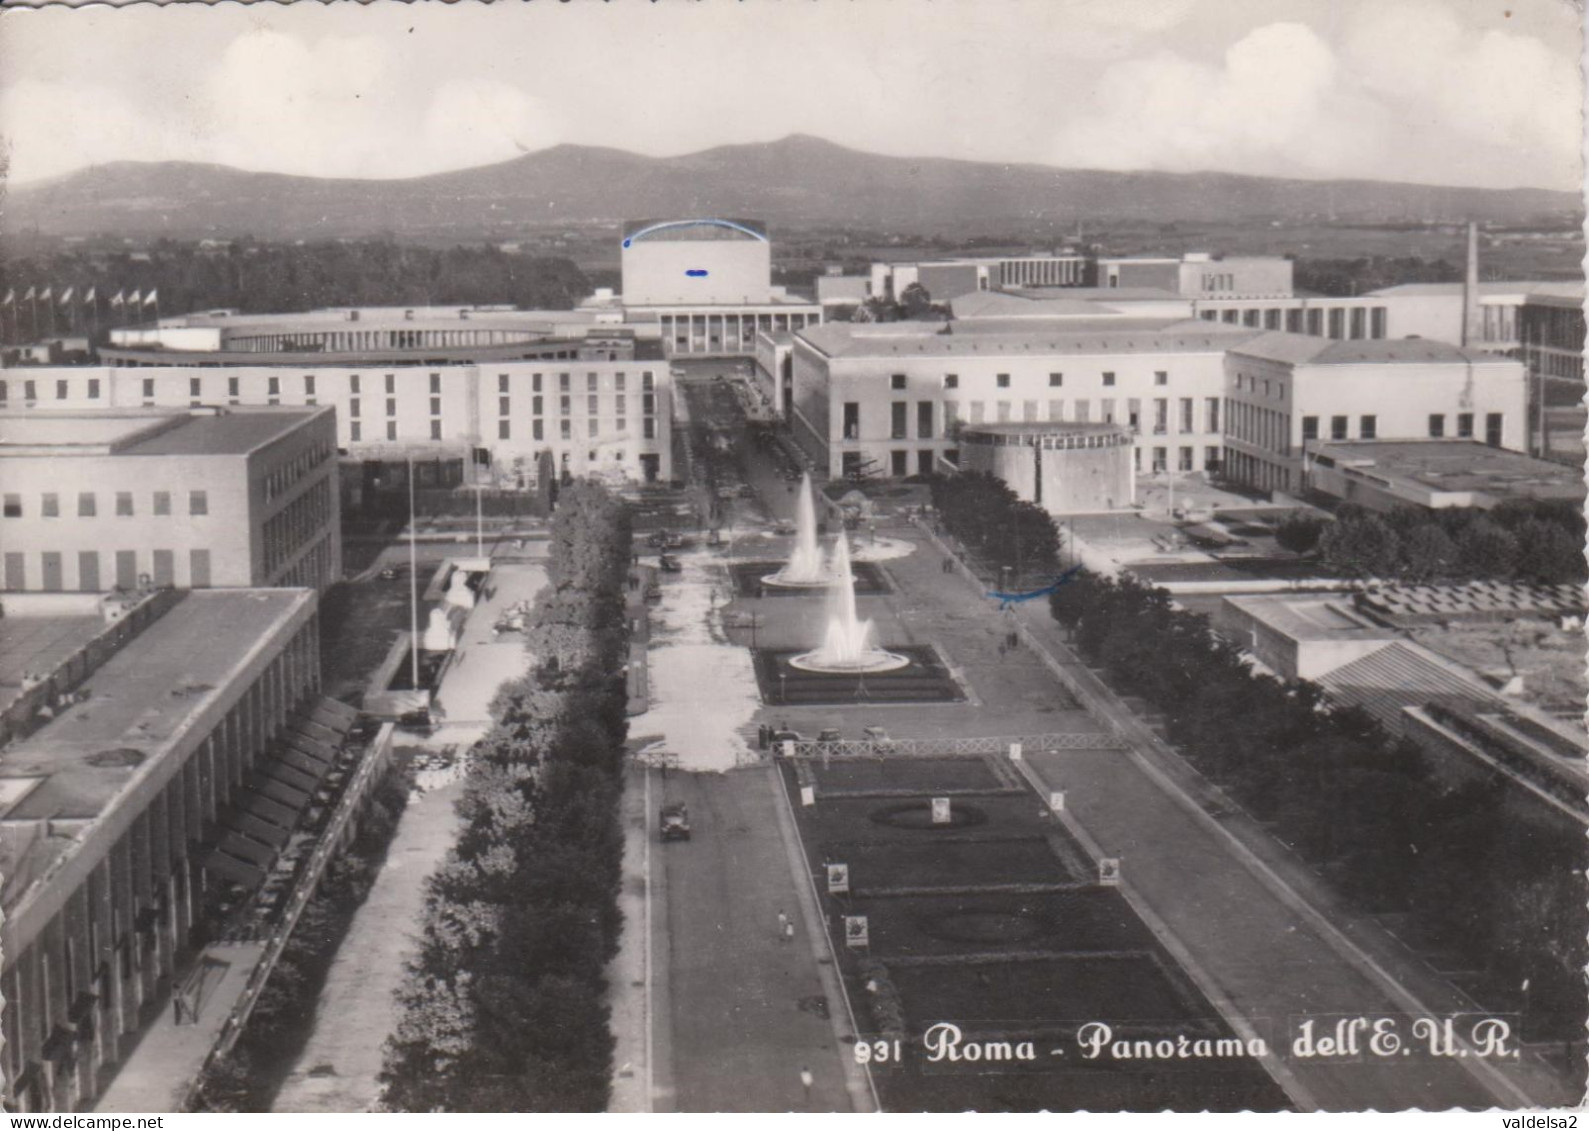 ROMA EUR - PANORAMA DELL'E.U.R. - FONTANE - 1958 - Mostre, Esposizioni